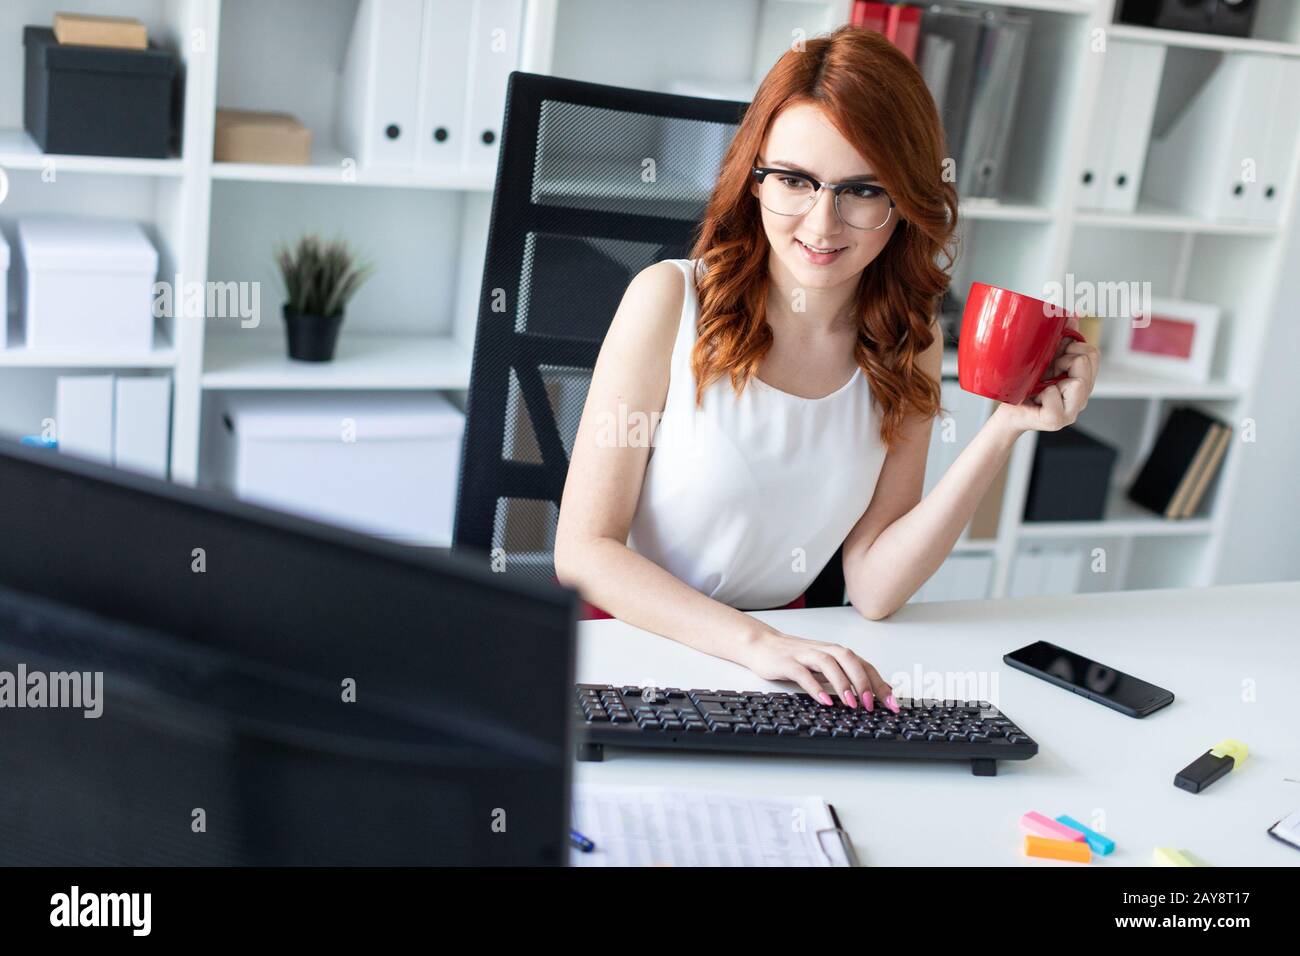 Belle jeune fille est assise au bureau dans le bureau, tient une tasse dans une main et travaille à l'ordinateur. Banque D'Images